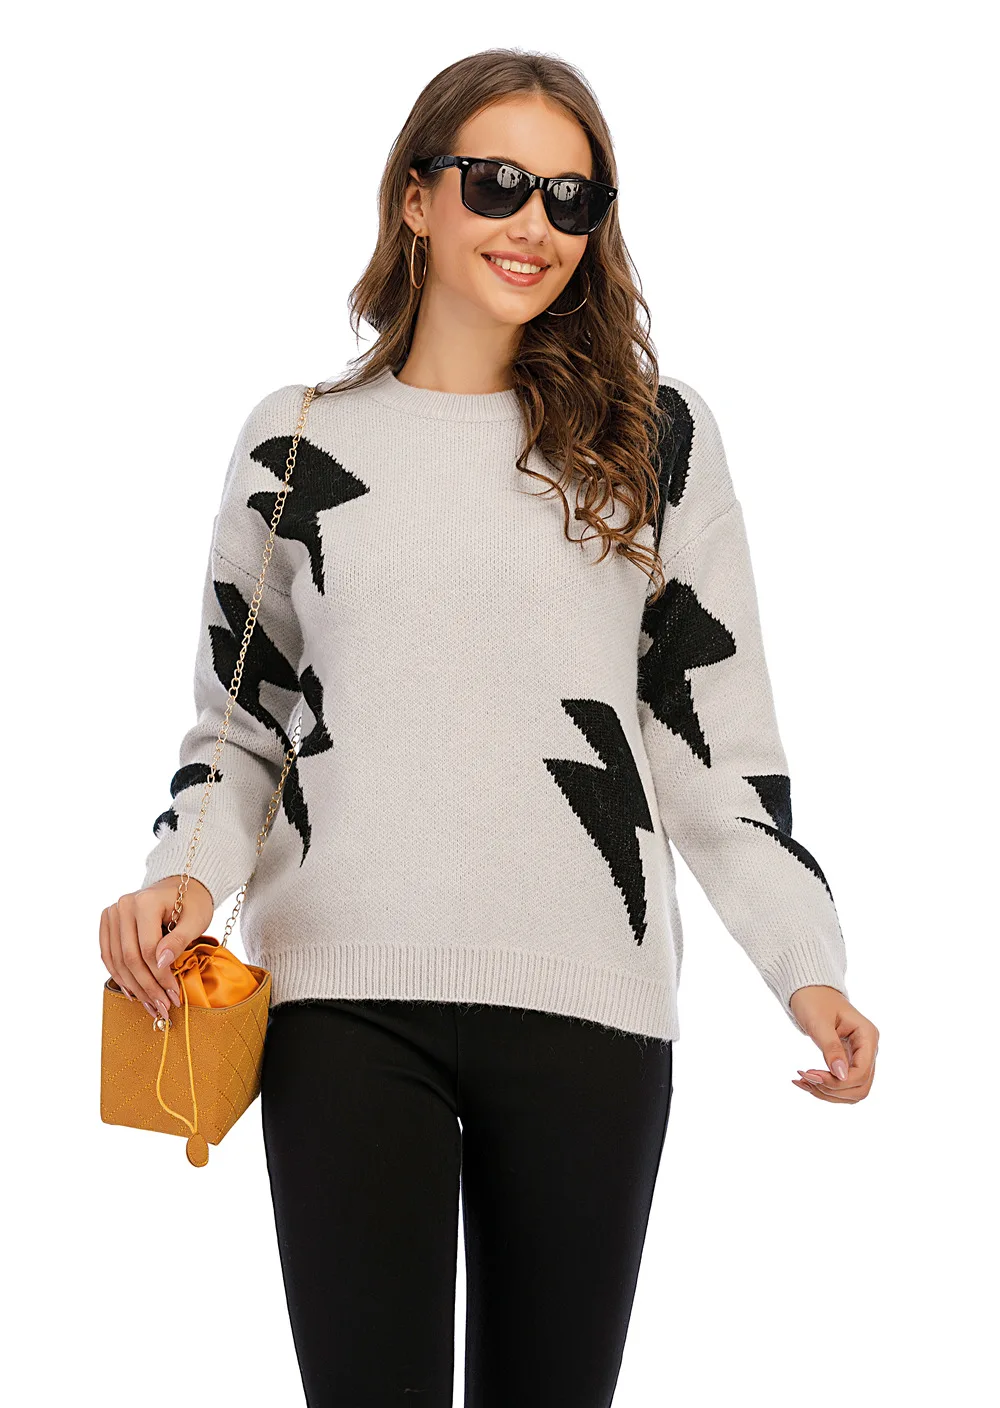 2020 el otoño y el invierno de las nuevas mujeres del suéter de punto estrella del rayo patrón de costura suéter 2